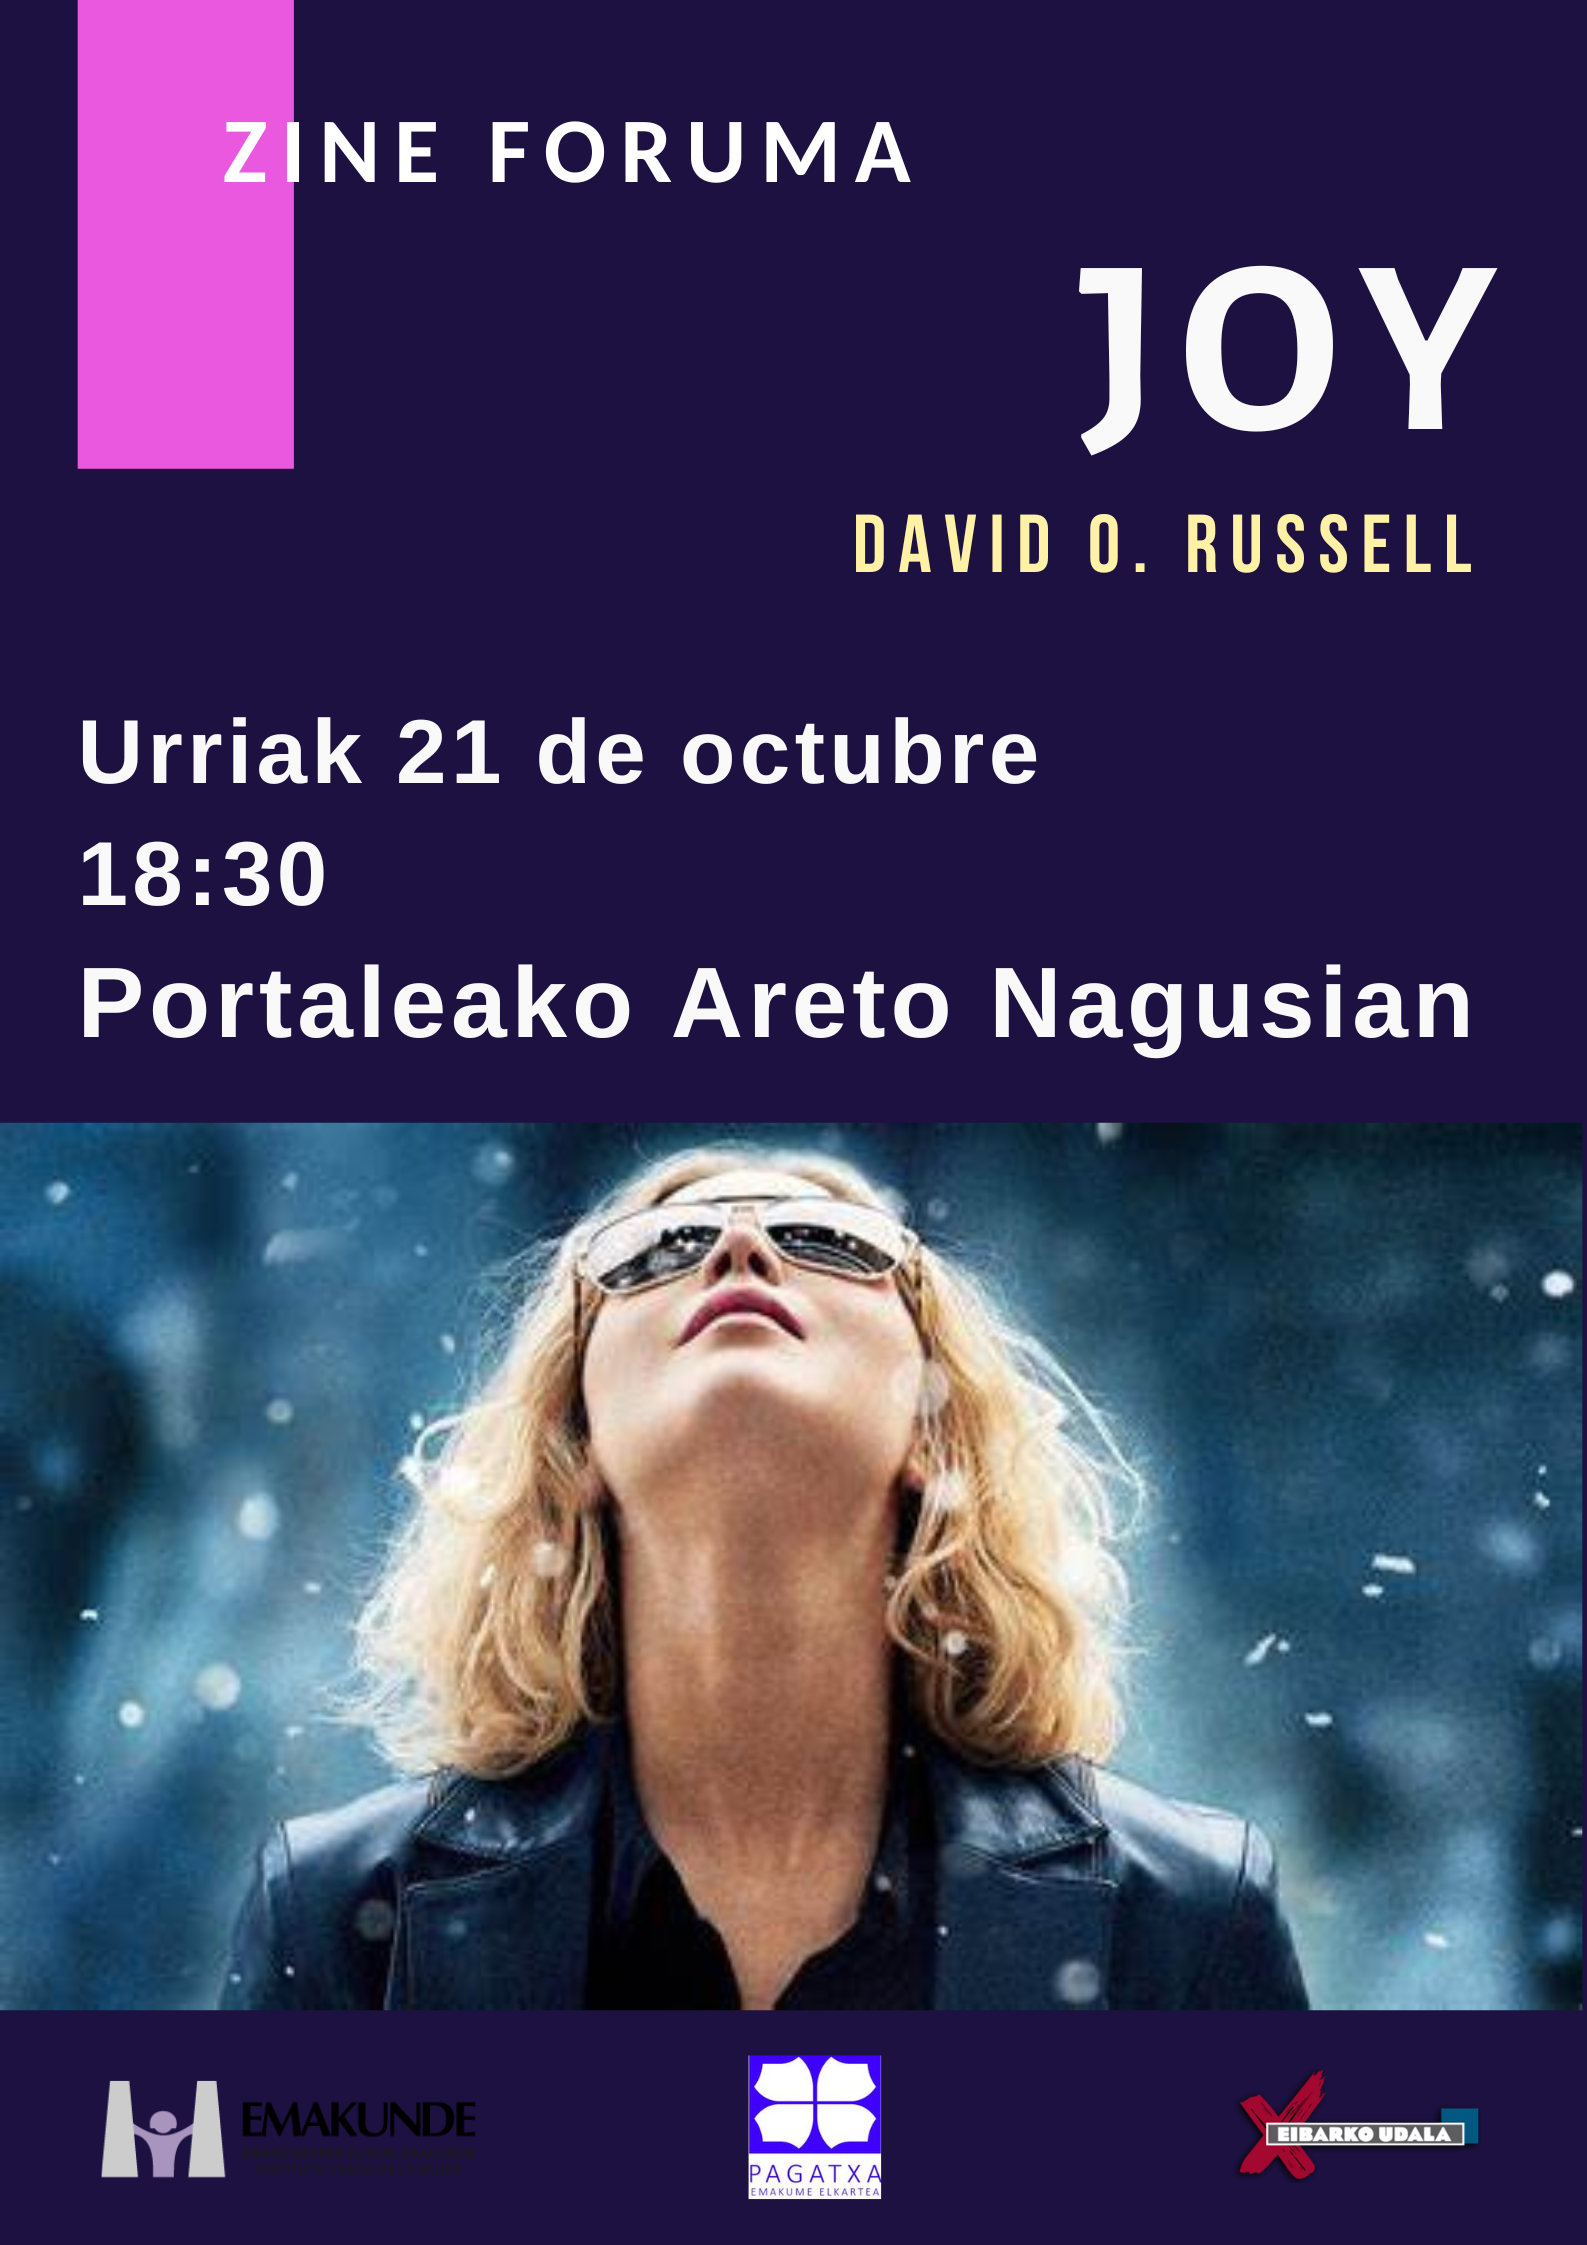 Cine Forum: Joy